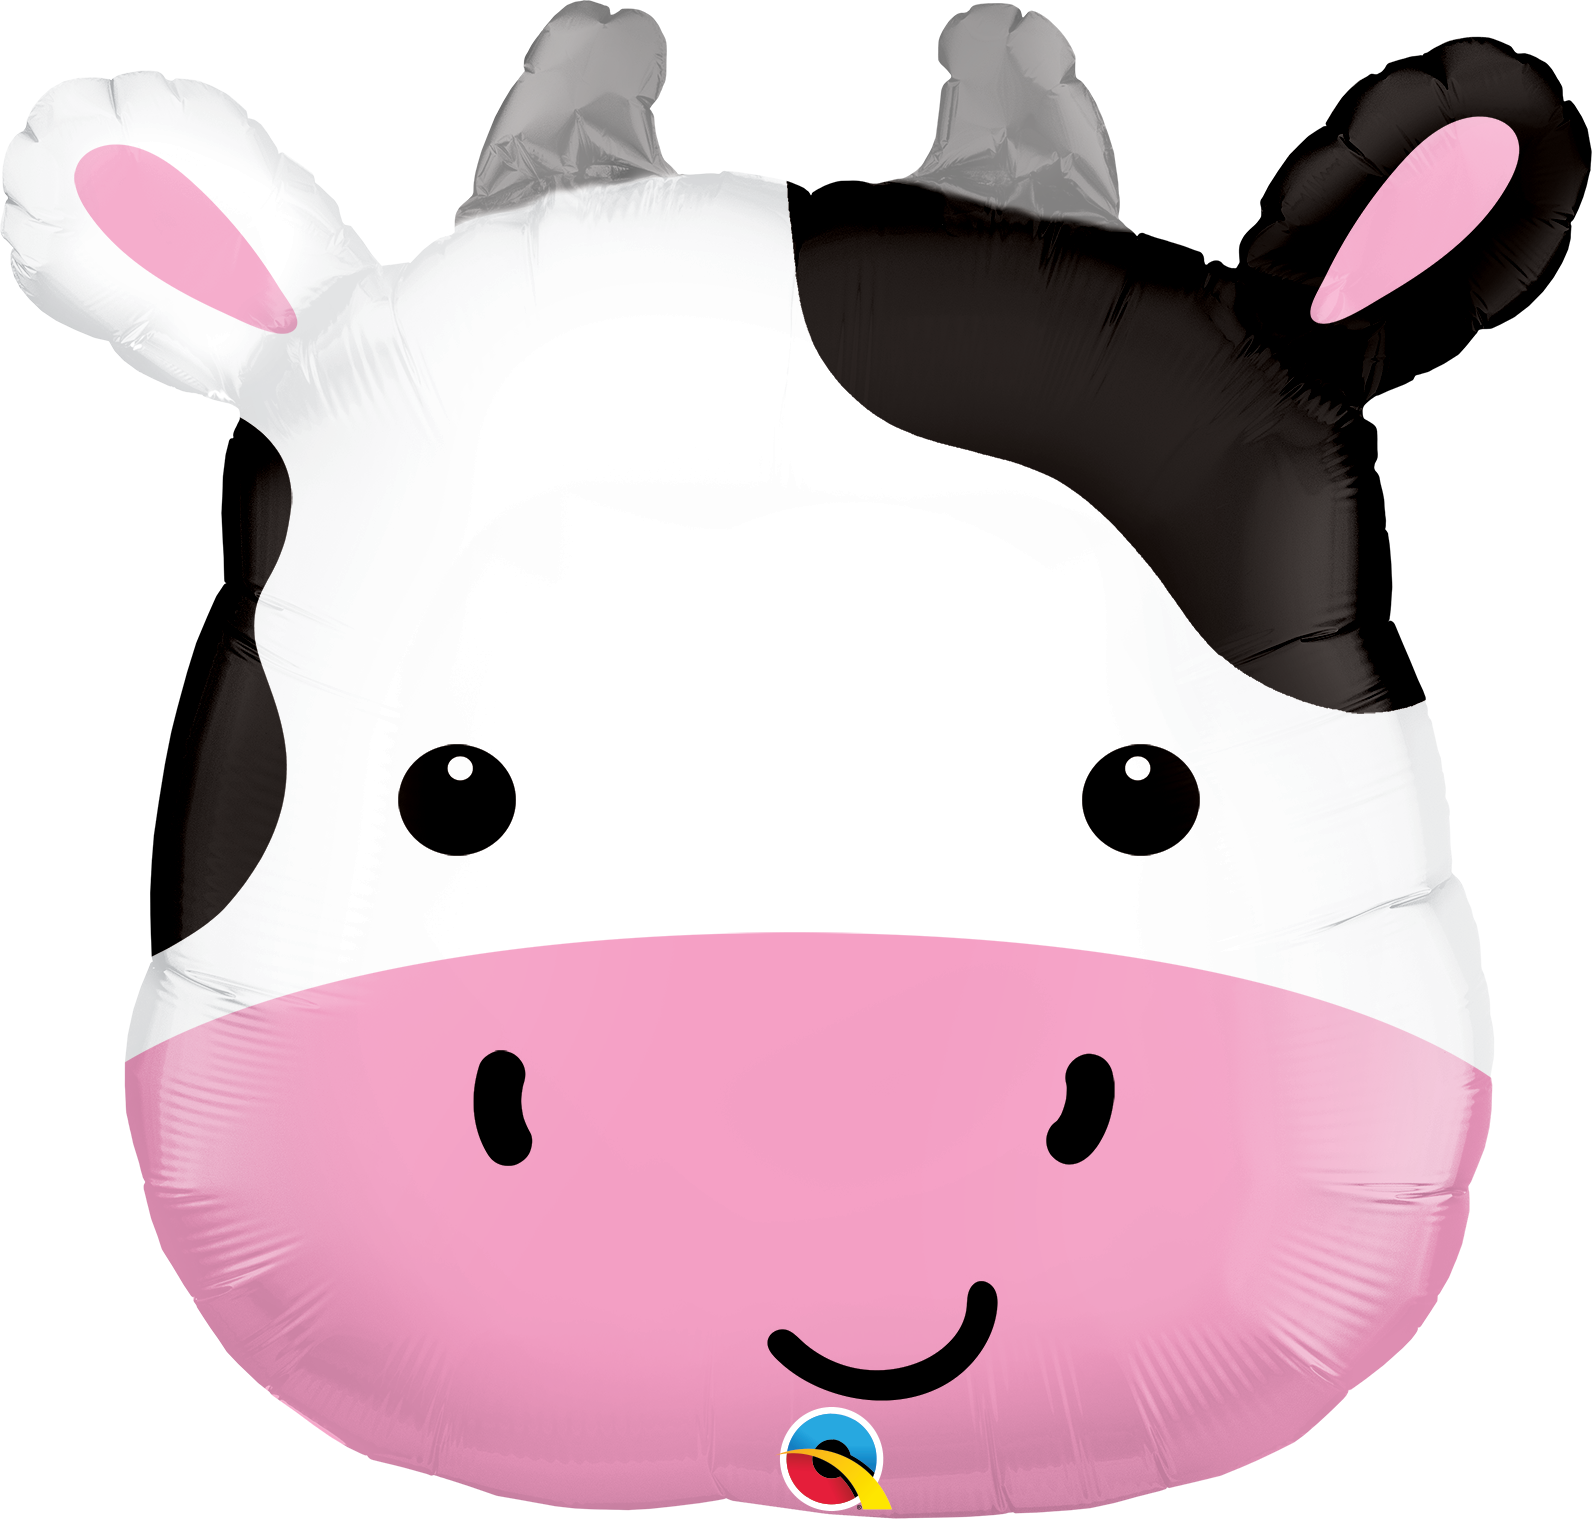 Cute Holstein Cow